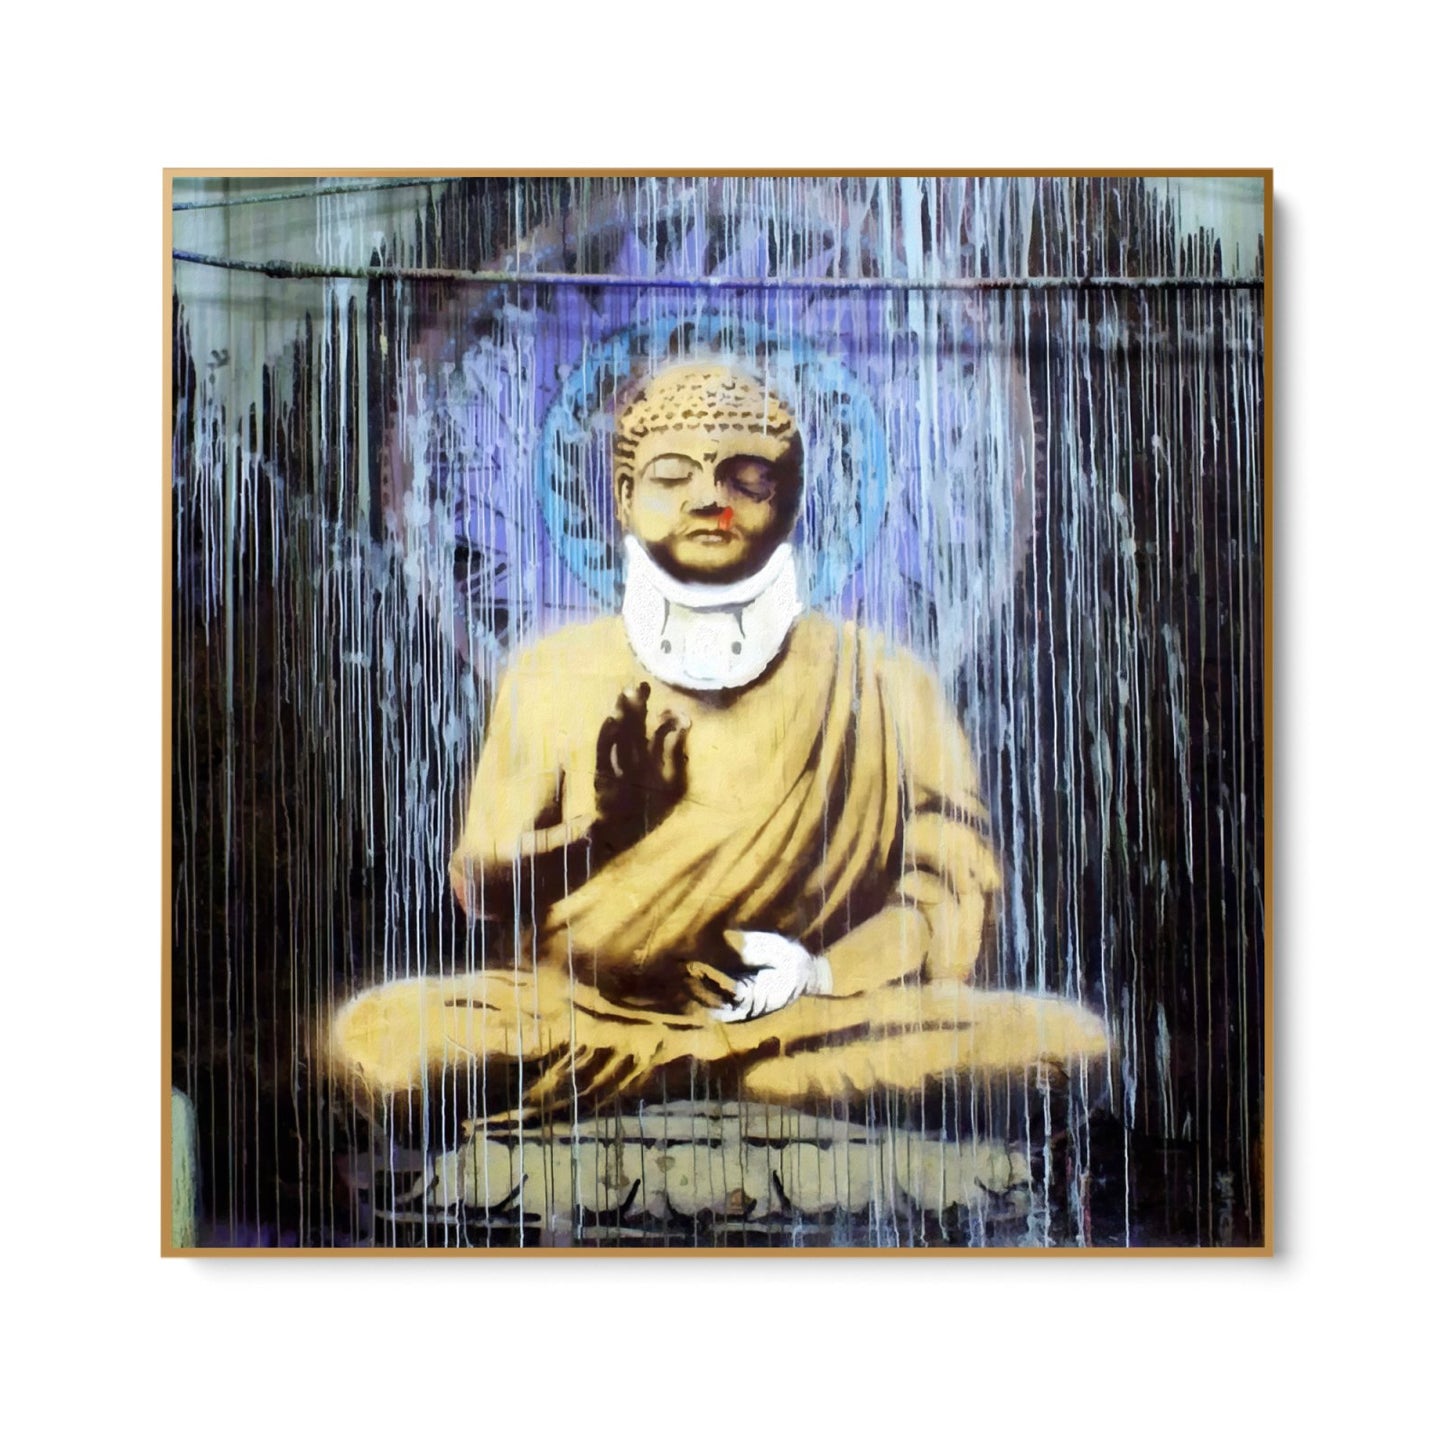 Injured Buddha, Banksy